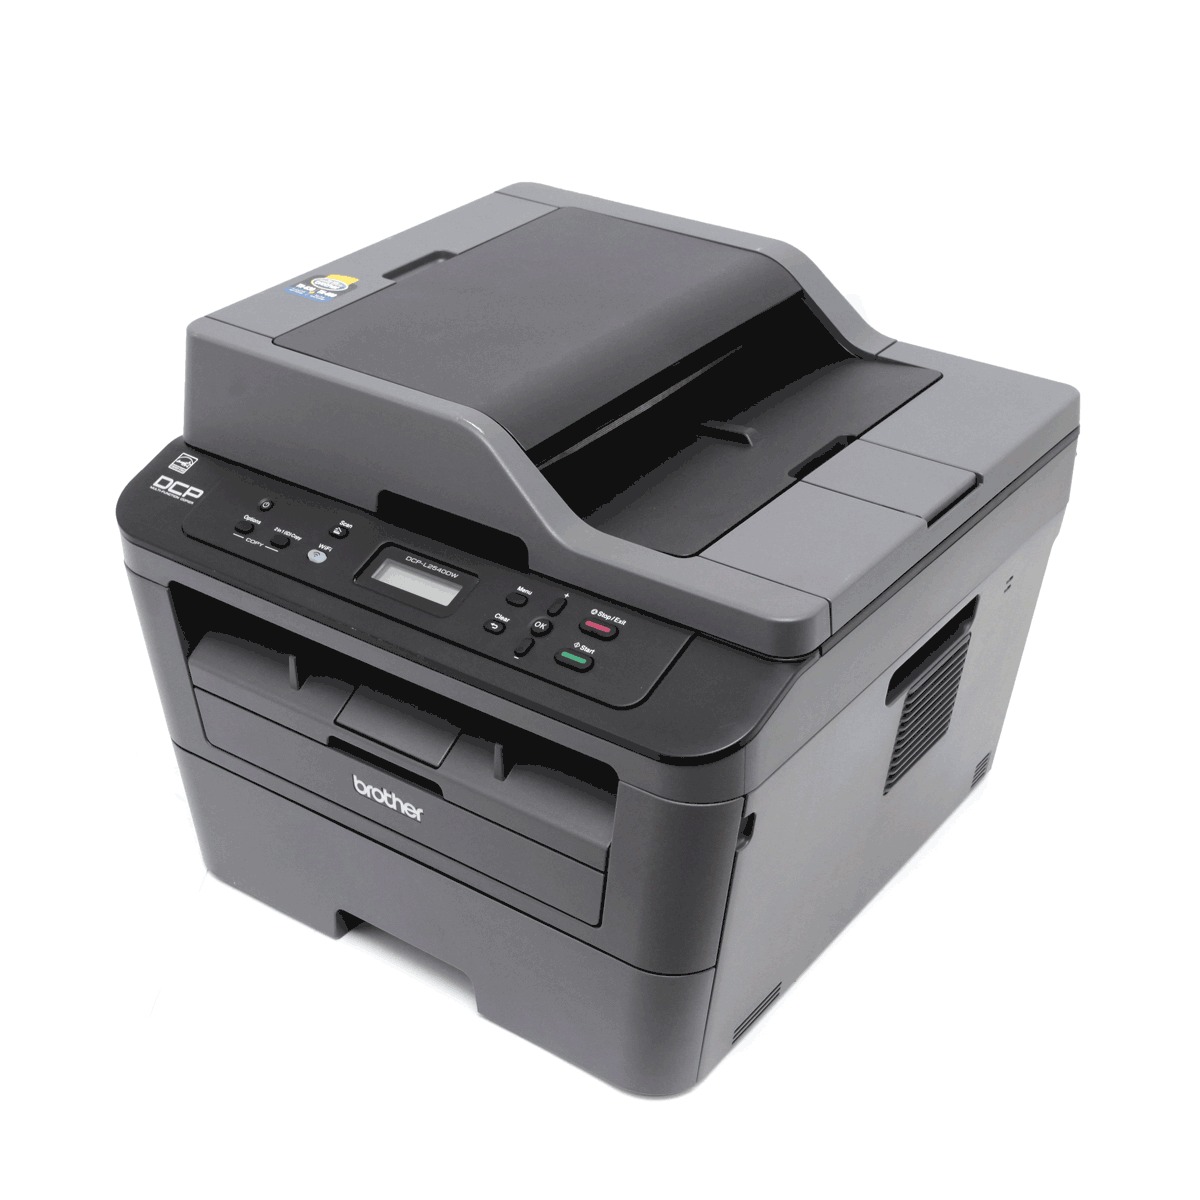 Impresora Multifuncional Brother DCP-L2540DW Láser Blanco y negro